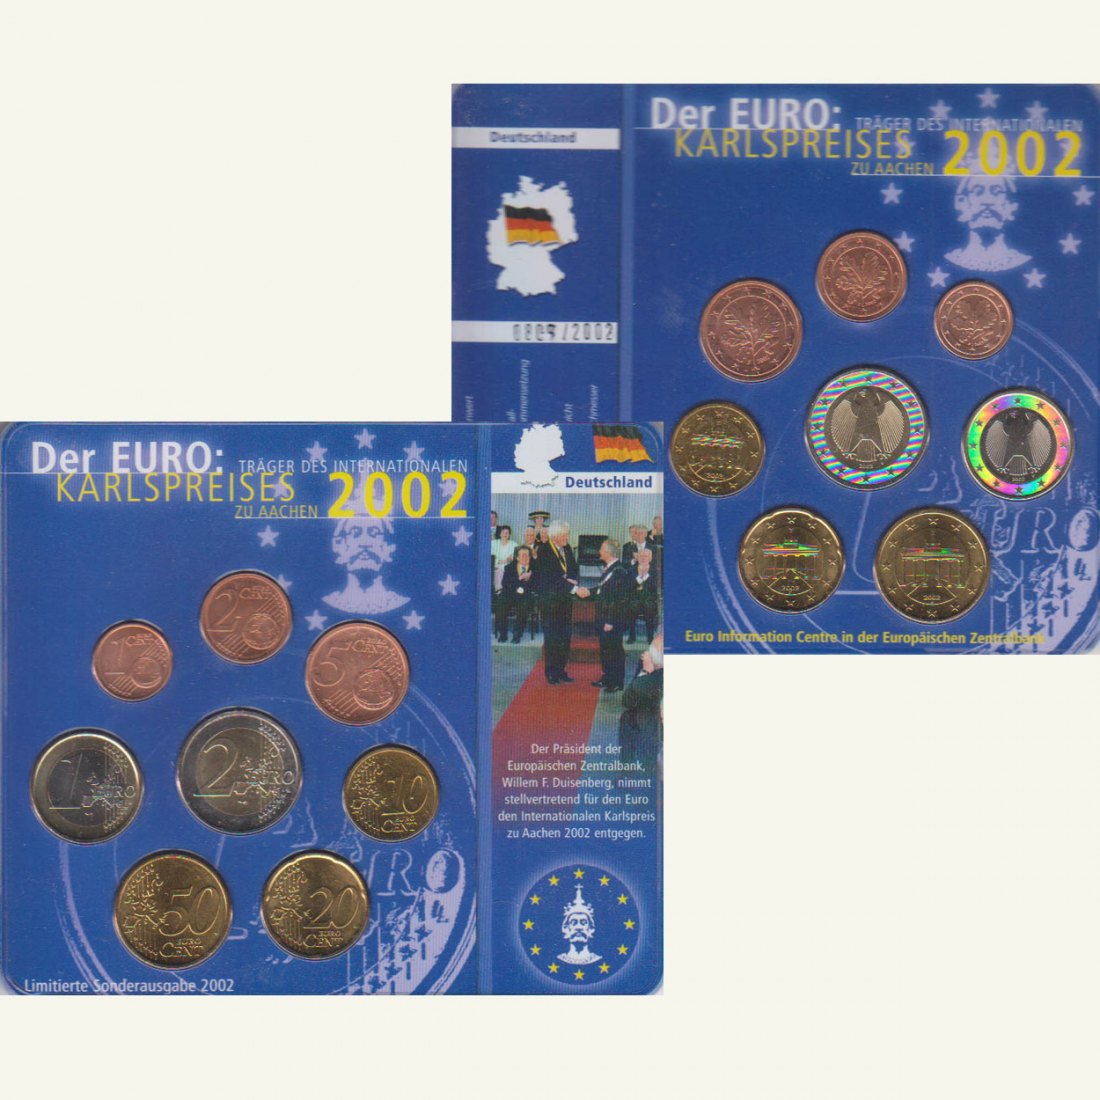  Sonder-KMS BRD mit *Karlspreis für den Euro* 2002 nur 2.002 Stück!   